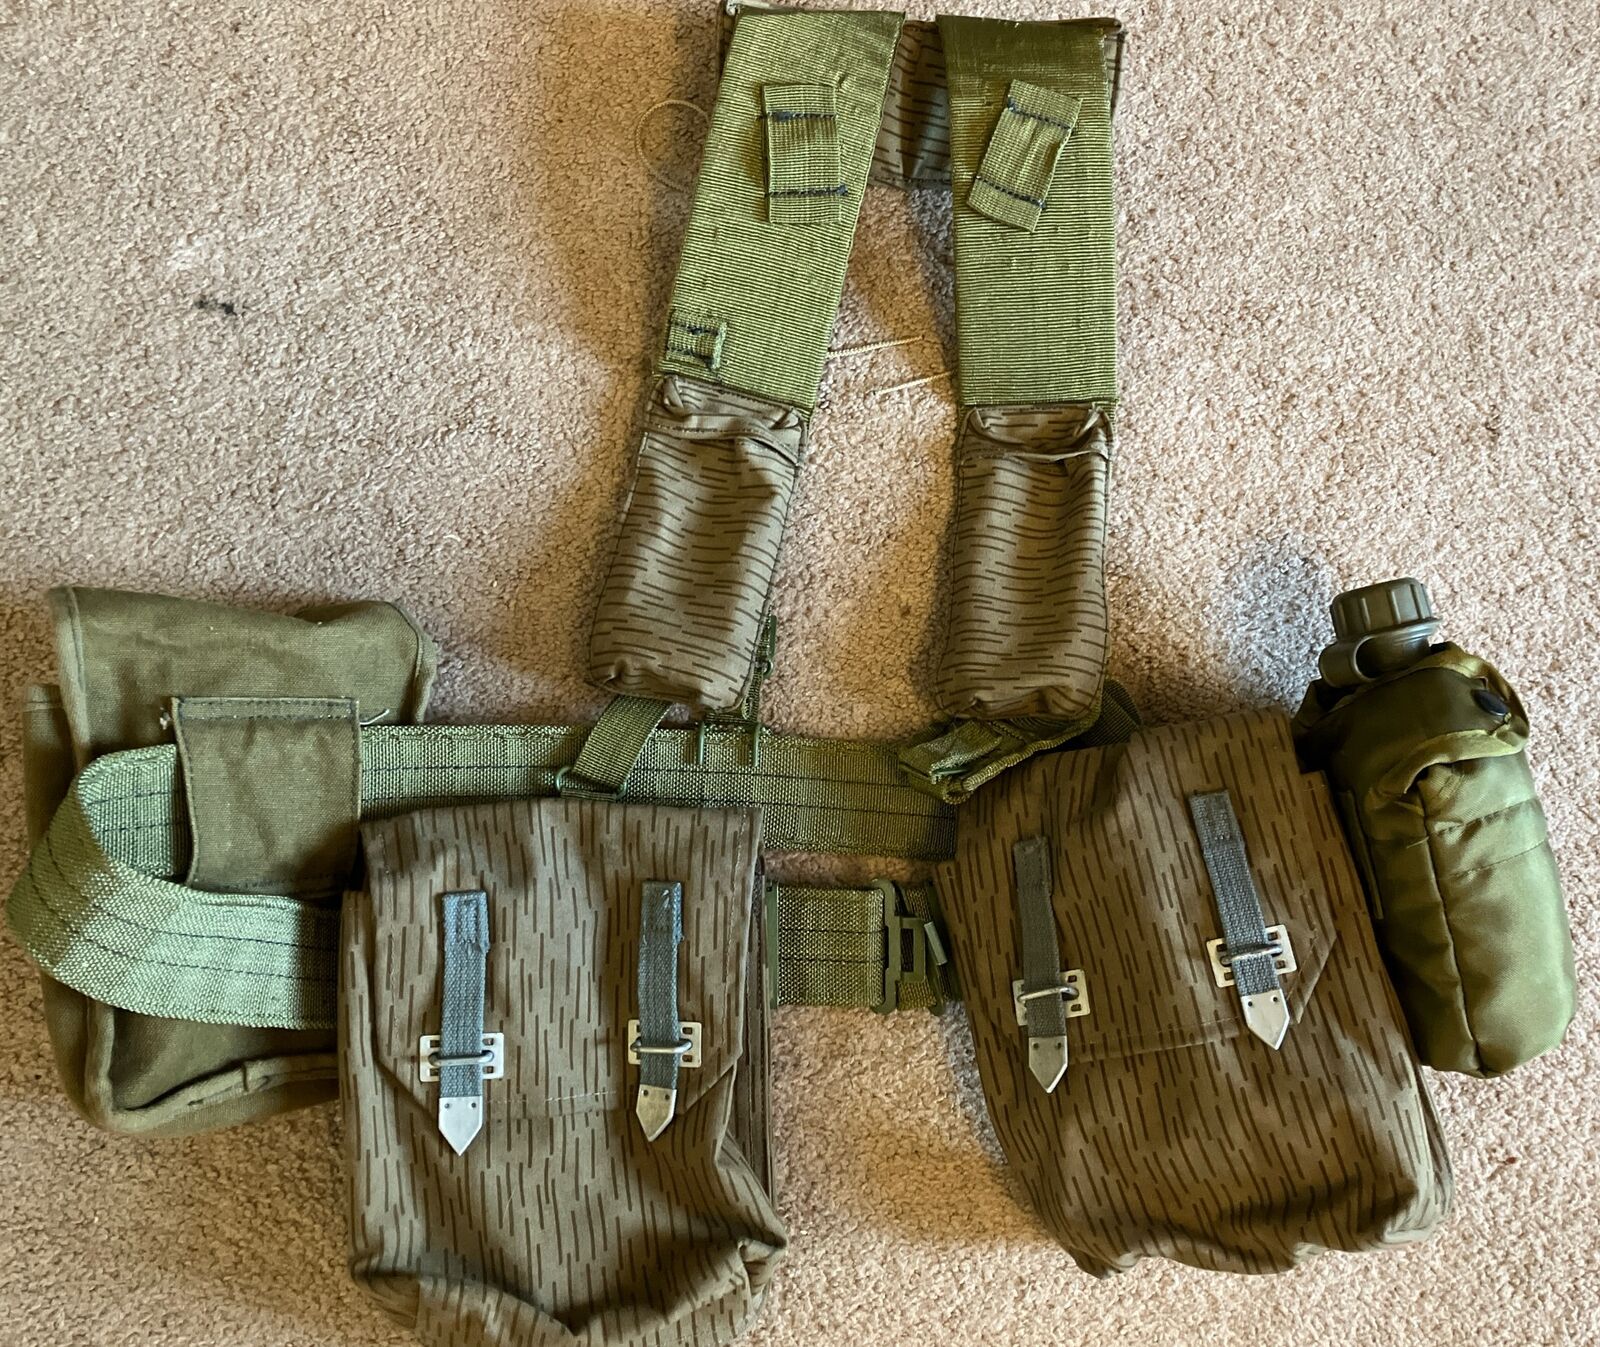 East German NVA AK47/74 (2) 4 Pocket Ammo Pouches, Belt, Suspenders, Field Gear